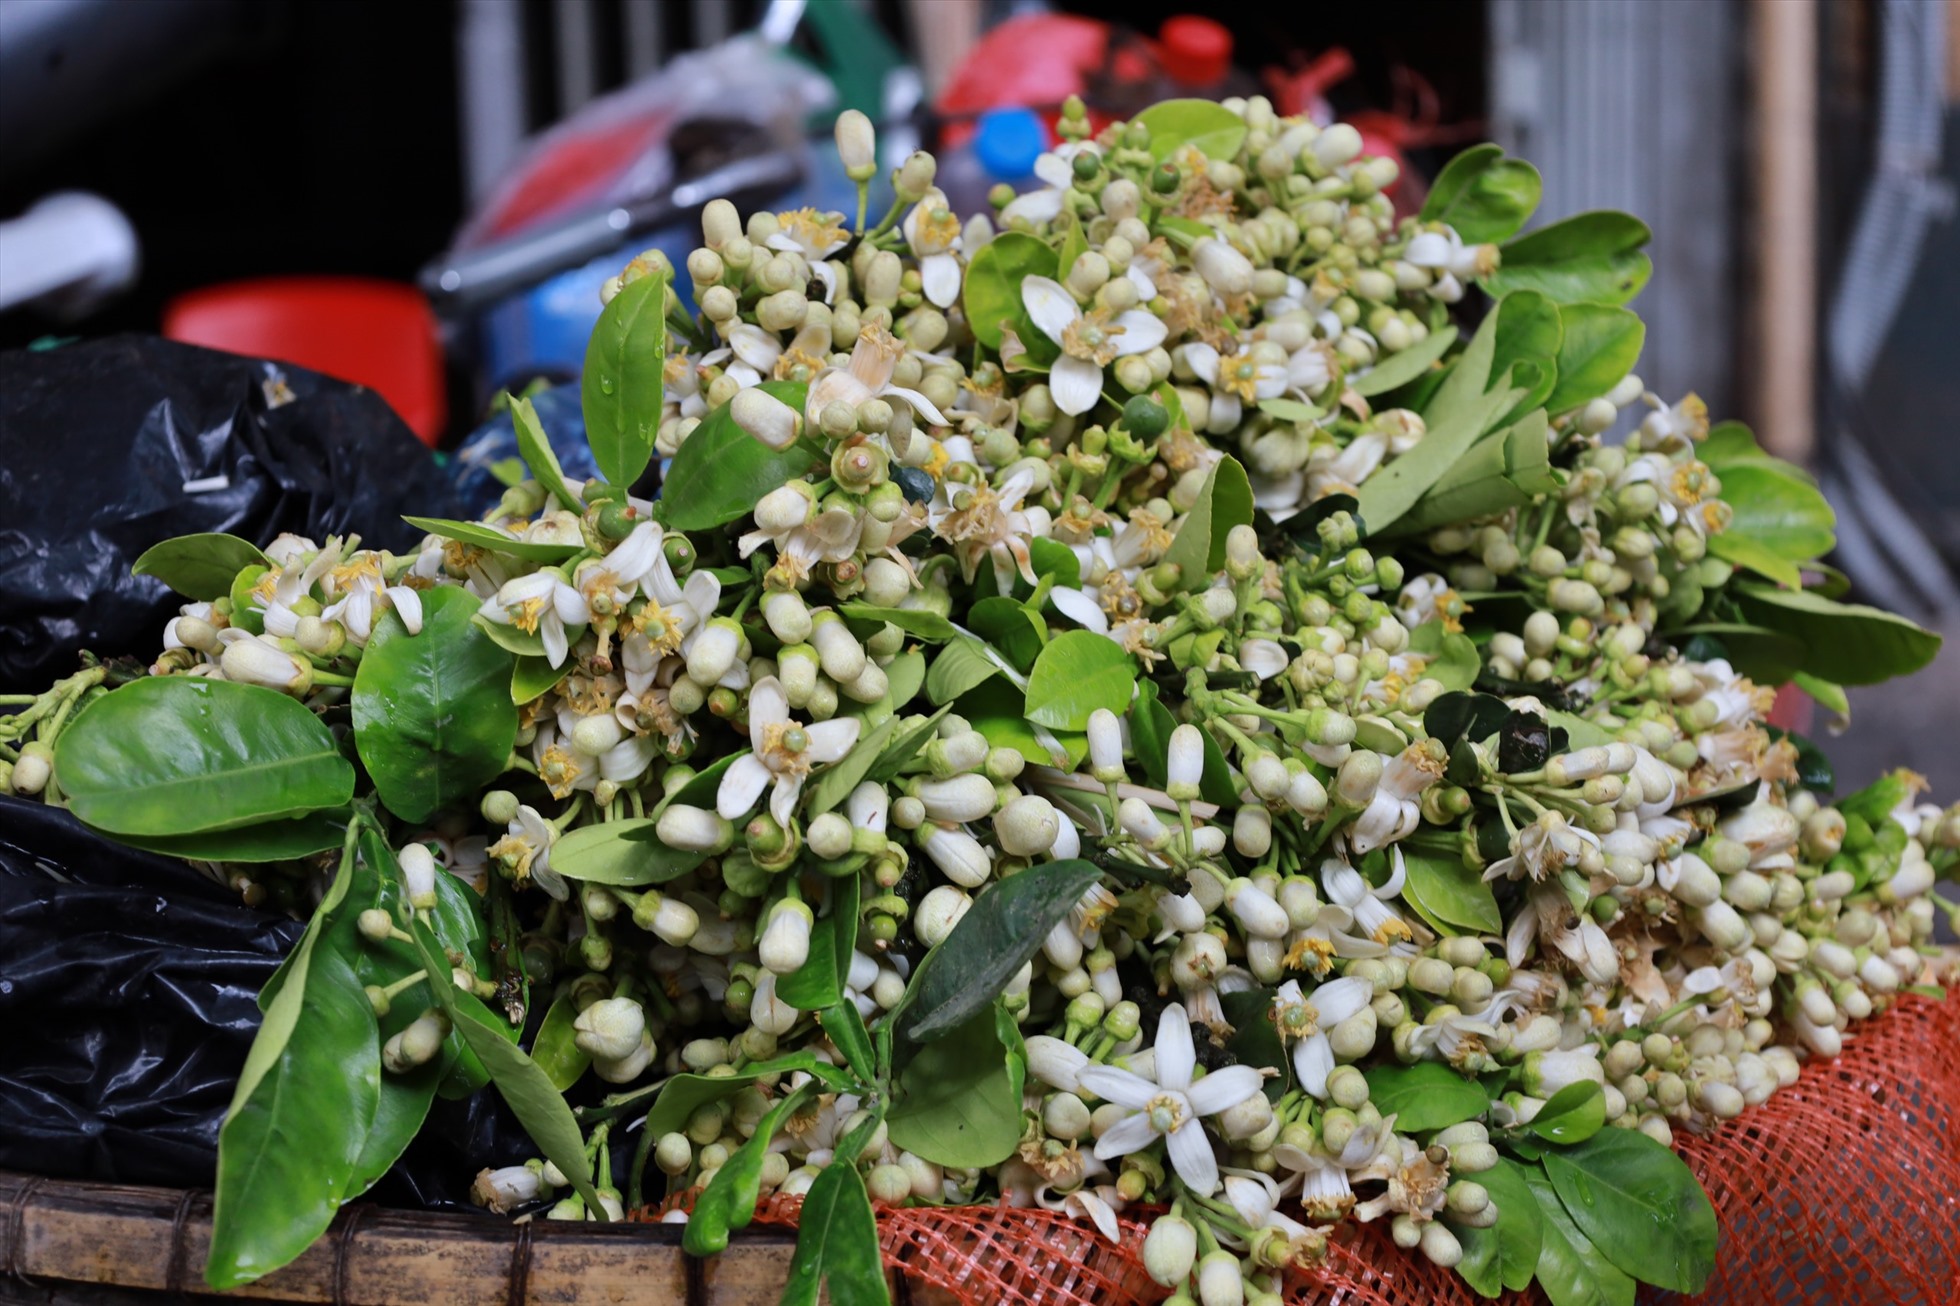 Hoa bưởi đang được bán với giá cao tại Hà Nội. Ảnh: Nguyễn Thúy.